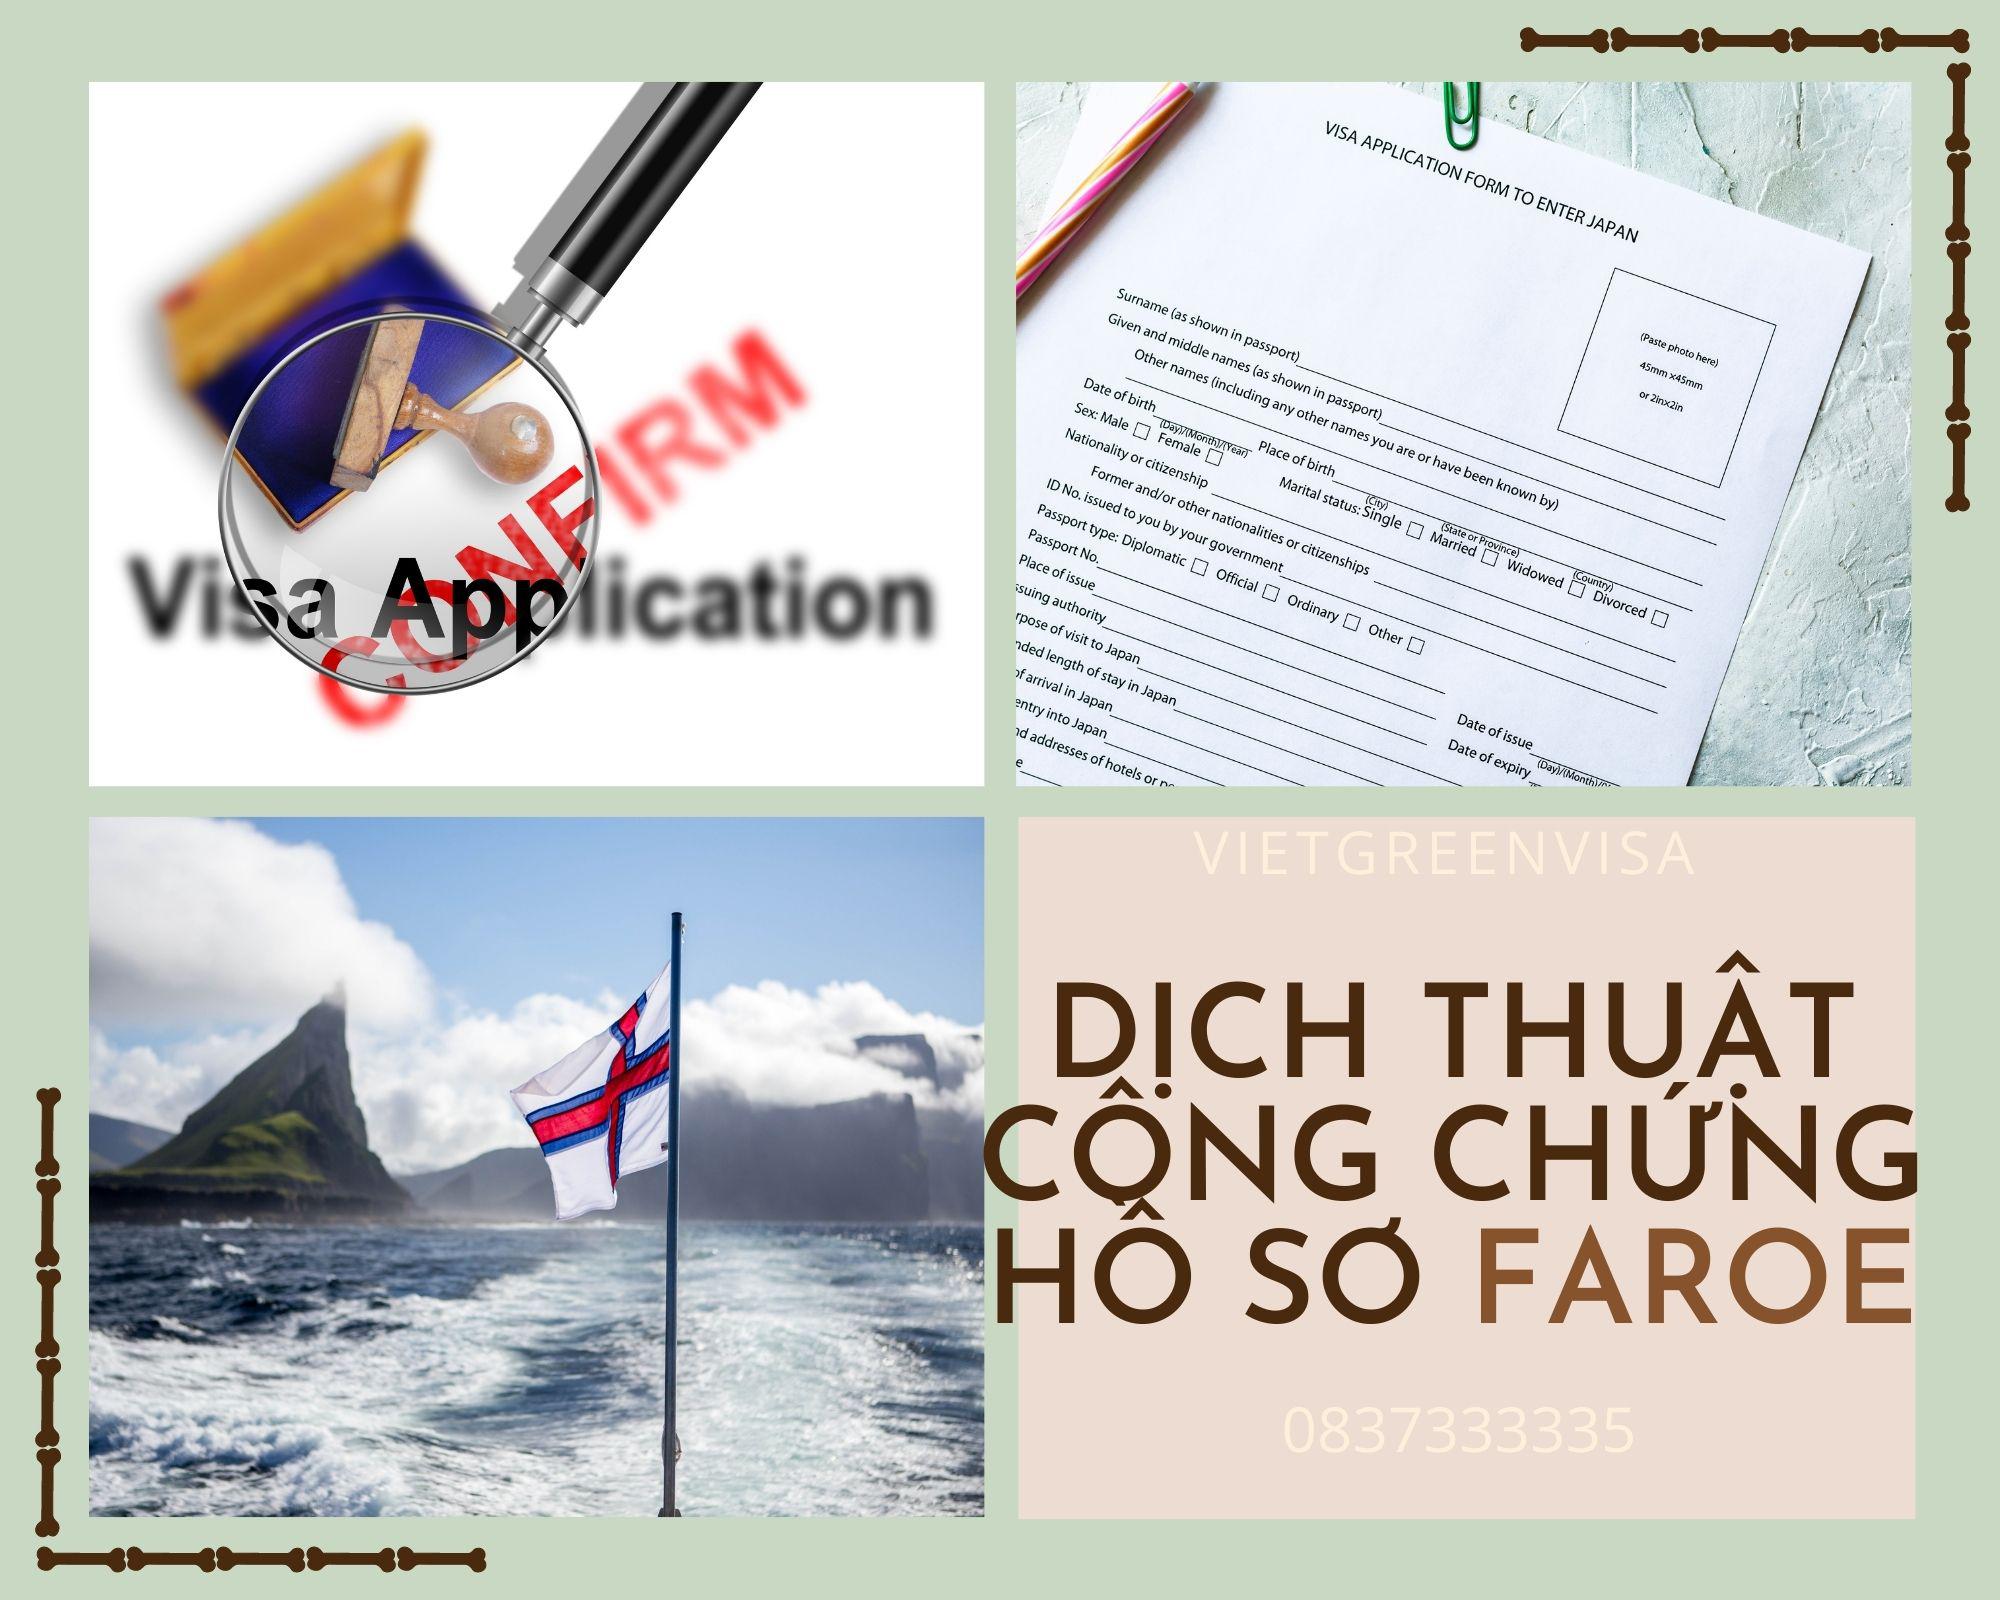 Hỗ trọ dịch thuật công chứng hồ sơ visa du lịch Faroe